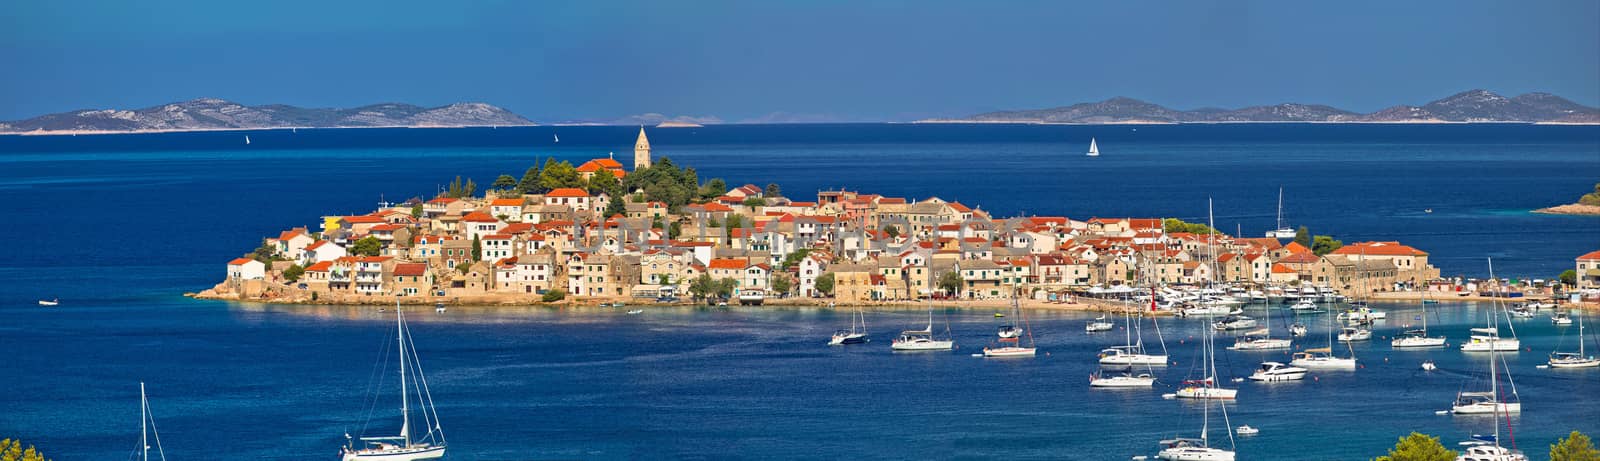 Town of Primosten Adriatic archipelago panoramic view, Dalmatia region of Croatia